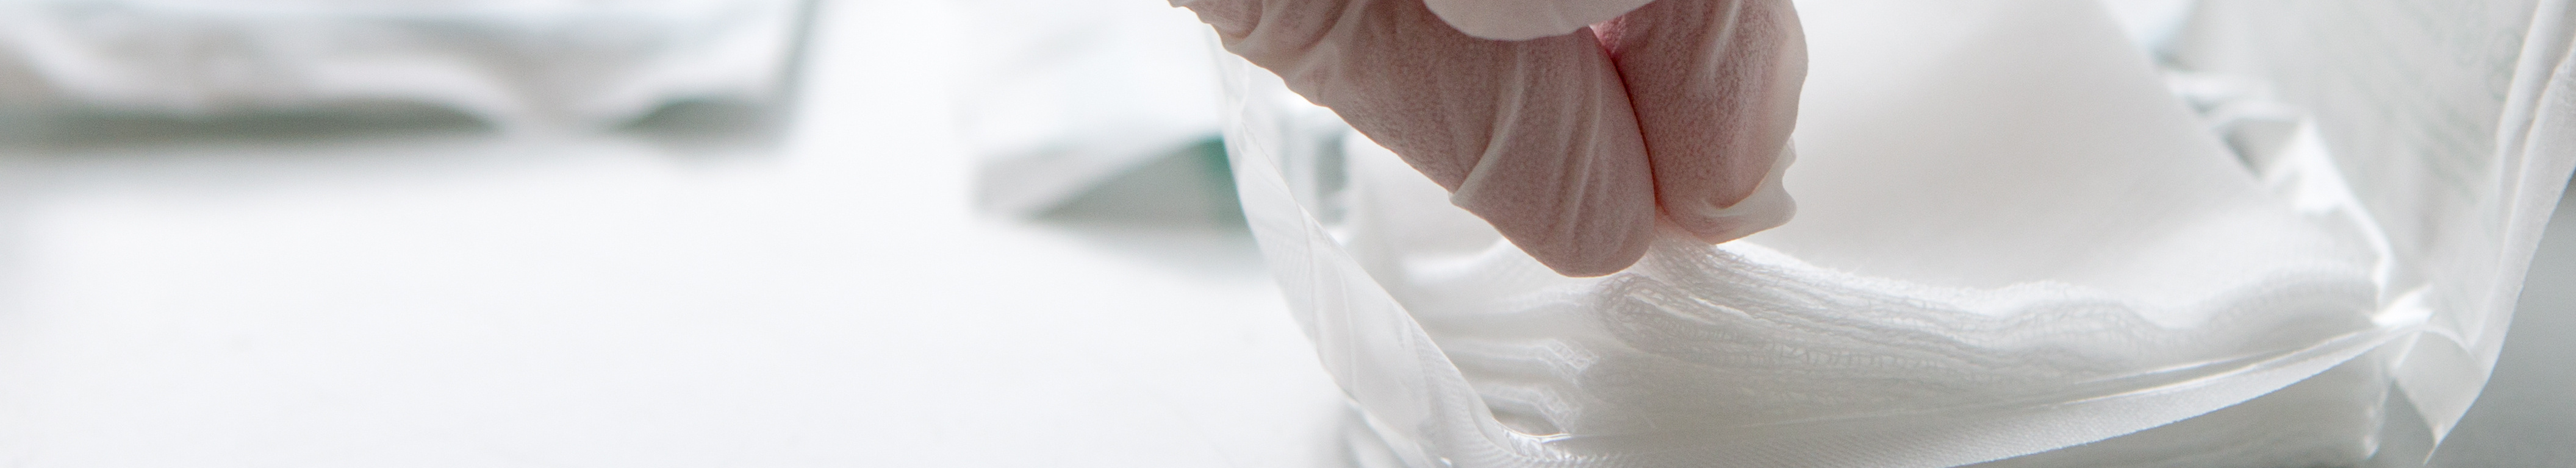 Sterile Kompresse wird mit Handschuh aus der Verpackung entnommen